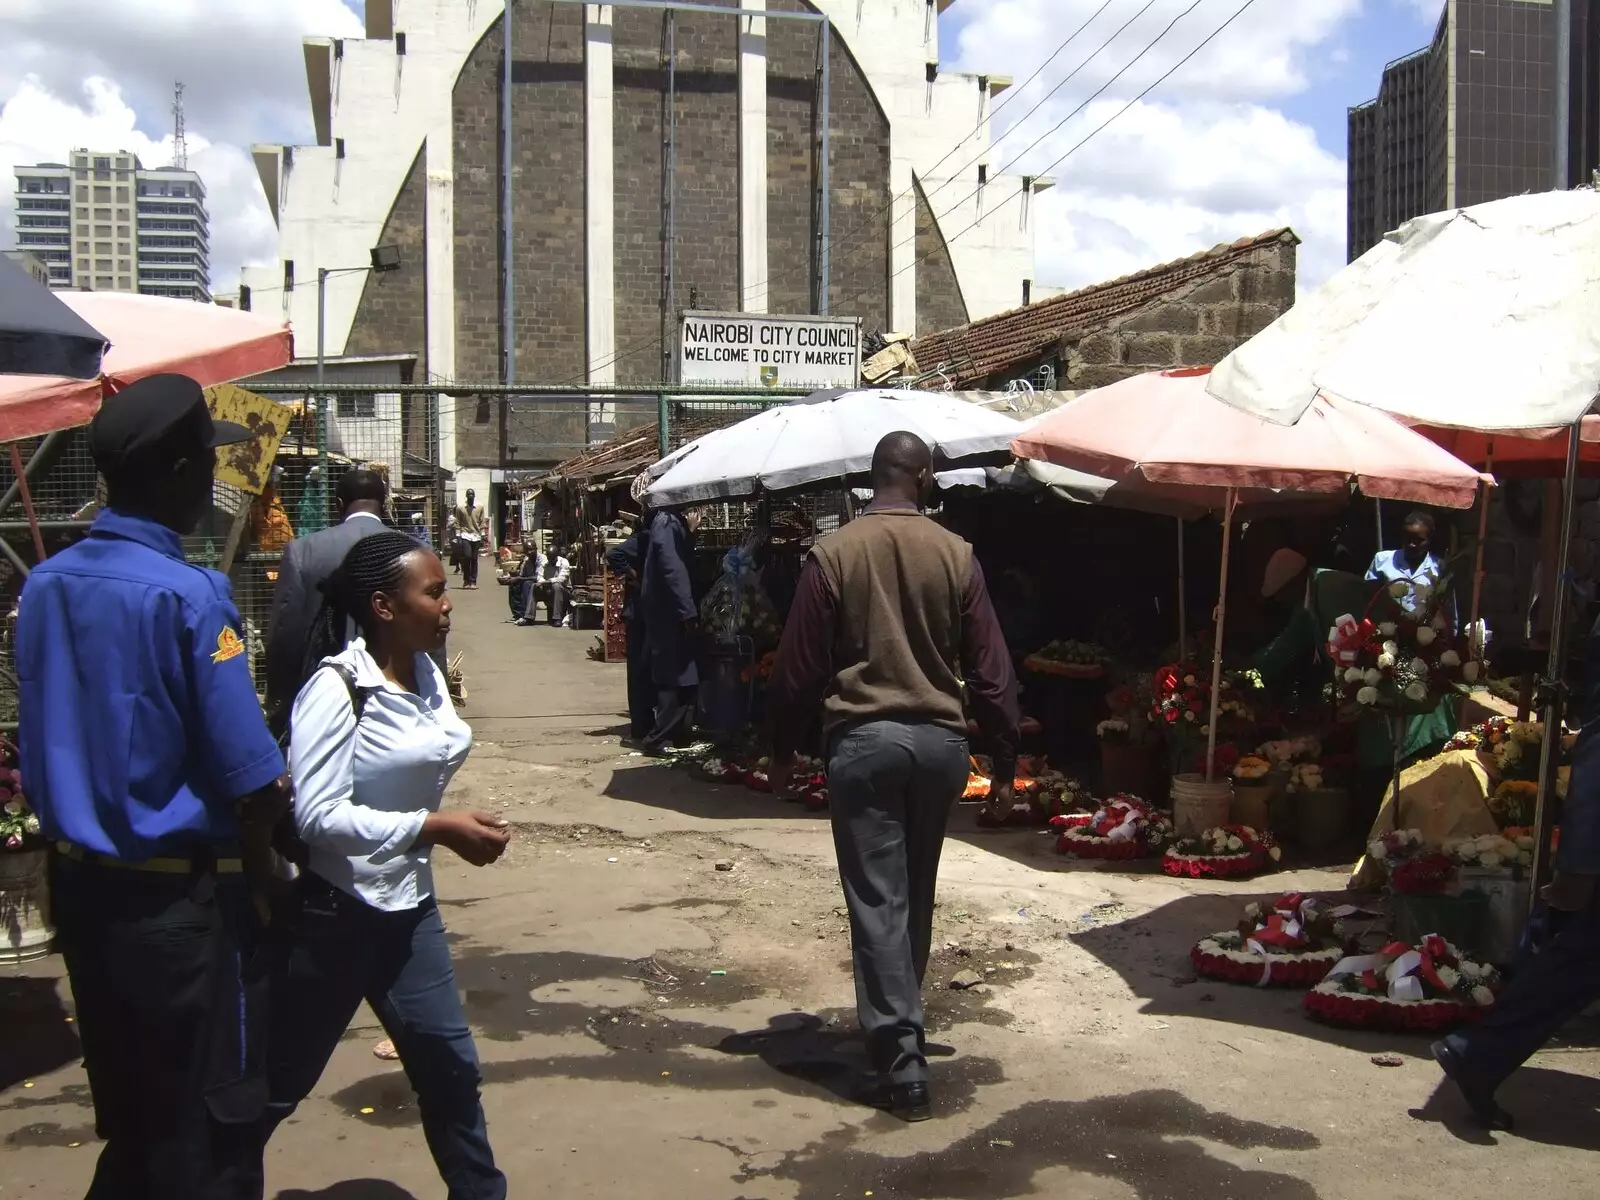 Nairobi market life, from Nairobi and the Road to Maasai Mara, Kenya, Africa - 1st November 2010